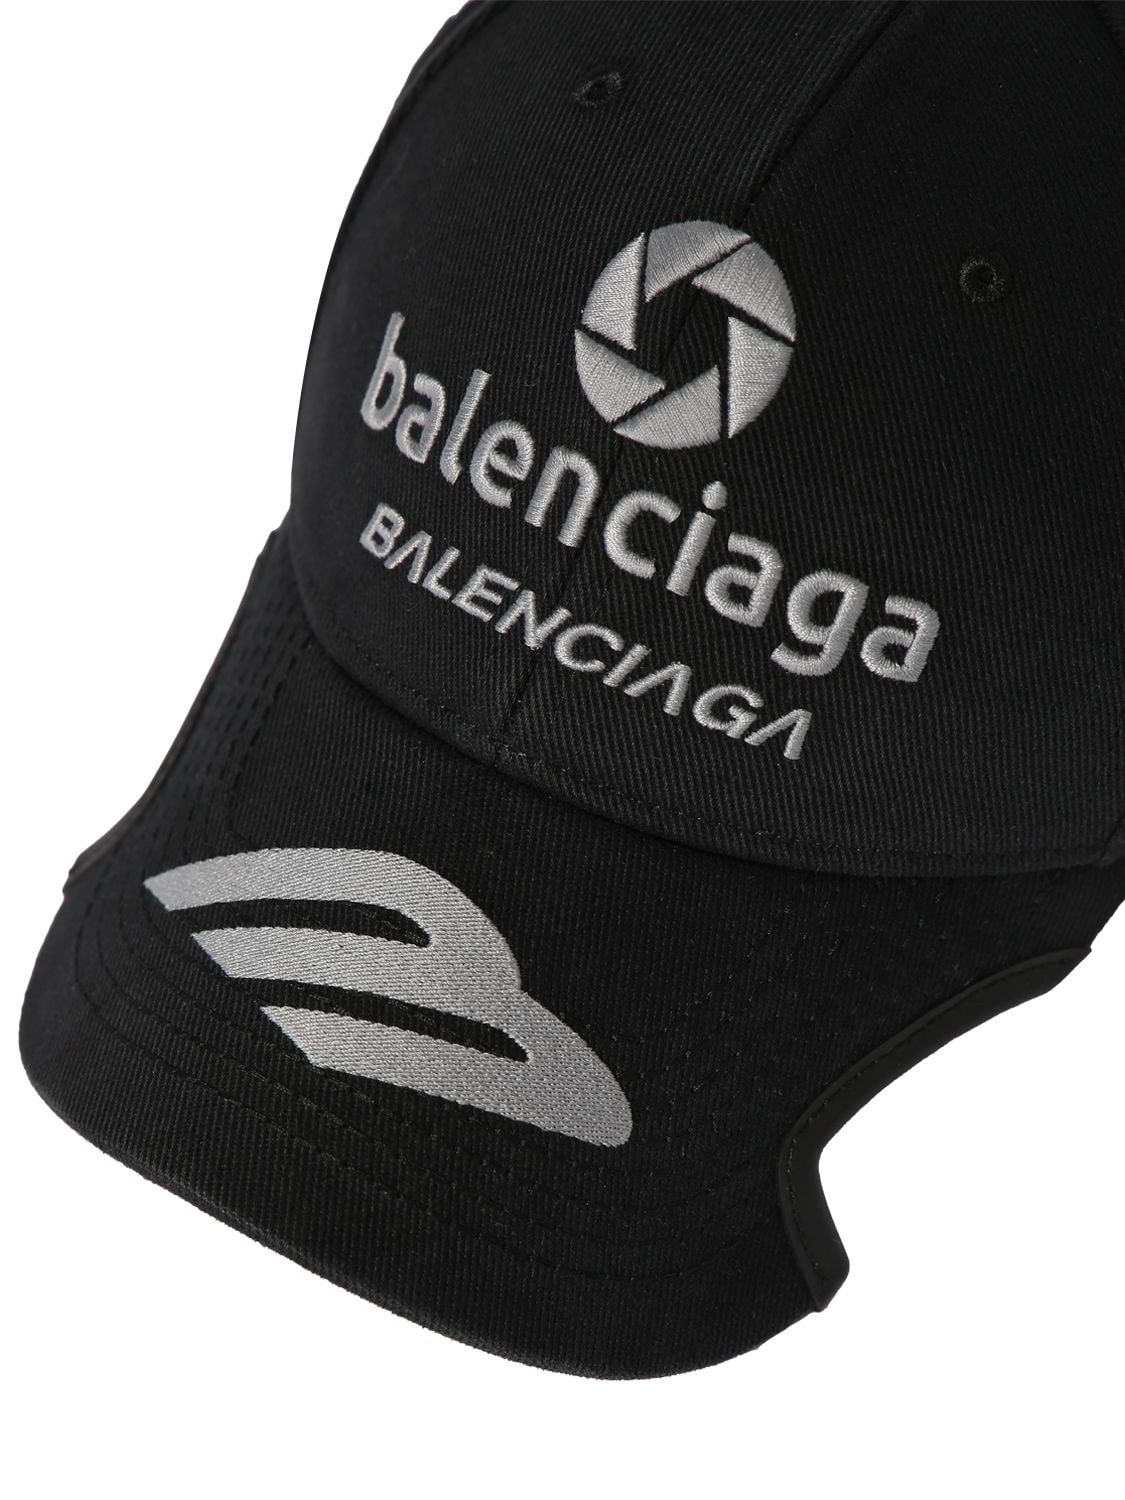 Shop Balenciaga Racer Cotton Drill Cap In Black